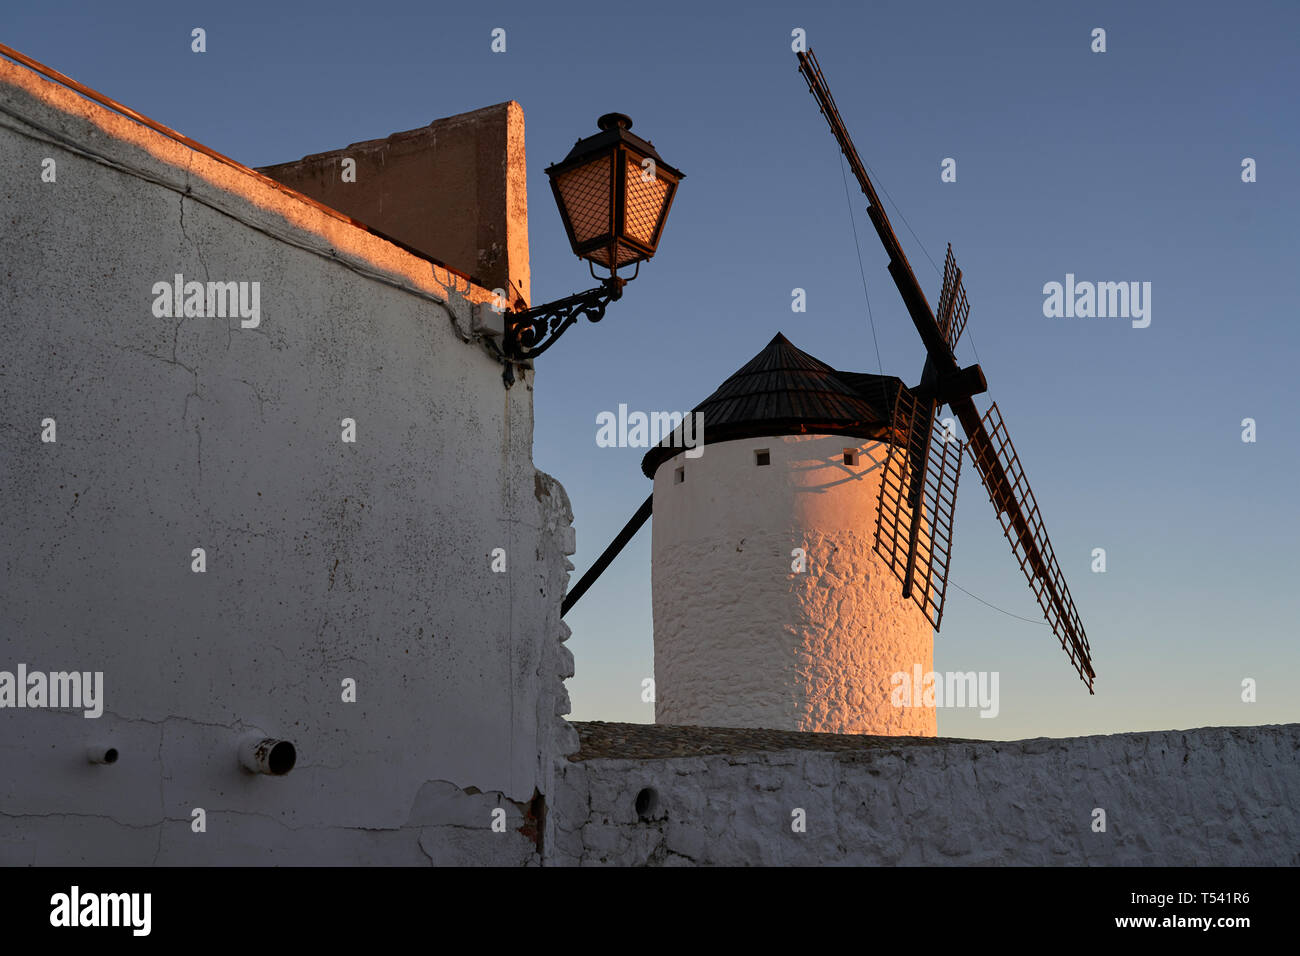 Windmills on La Paz hill, Route of Don Quixote. Stock Photo